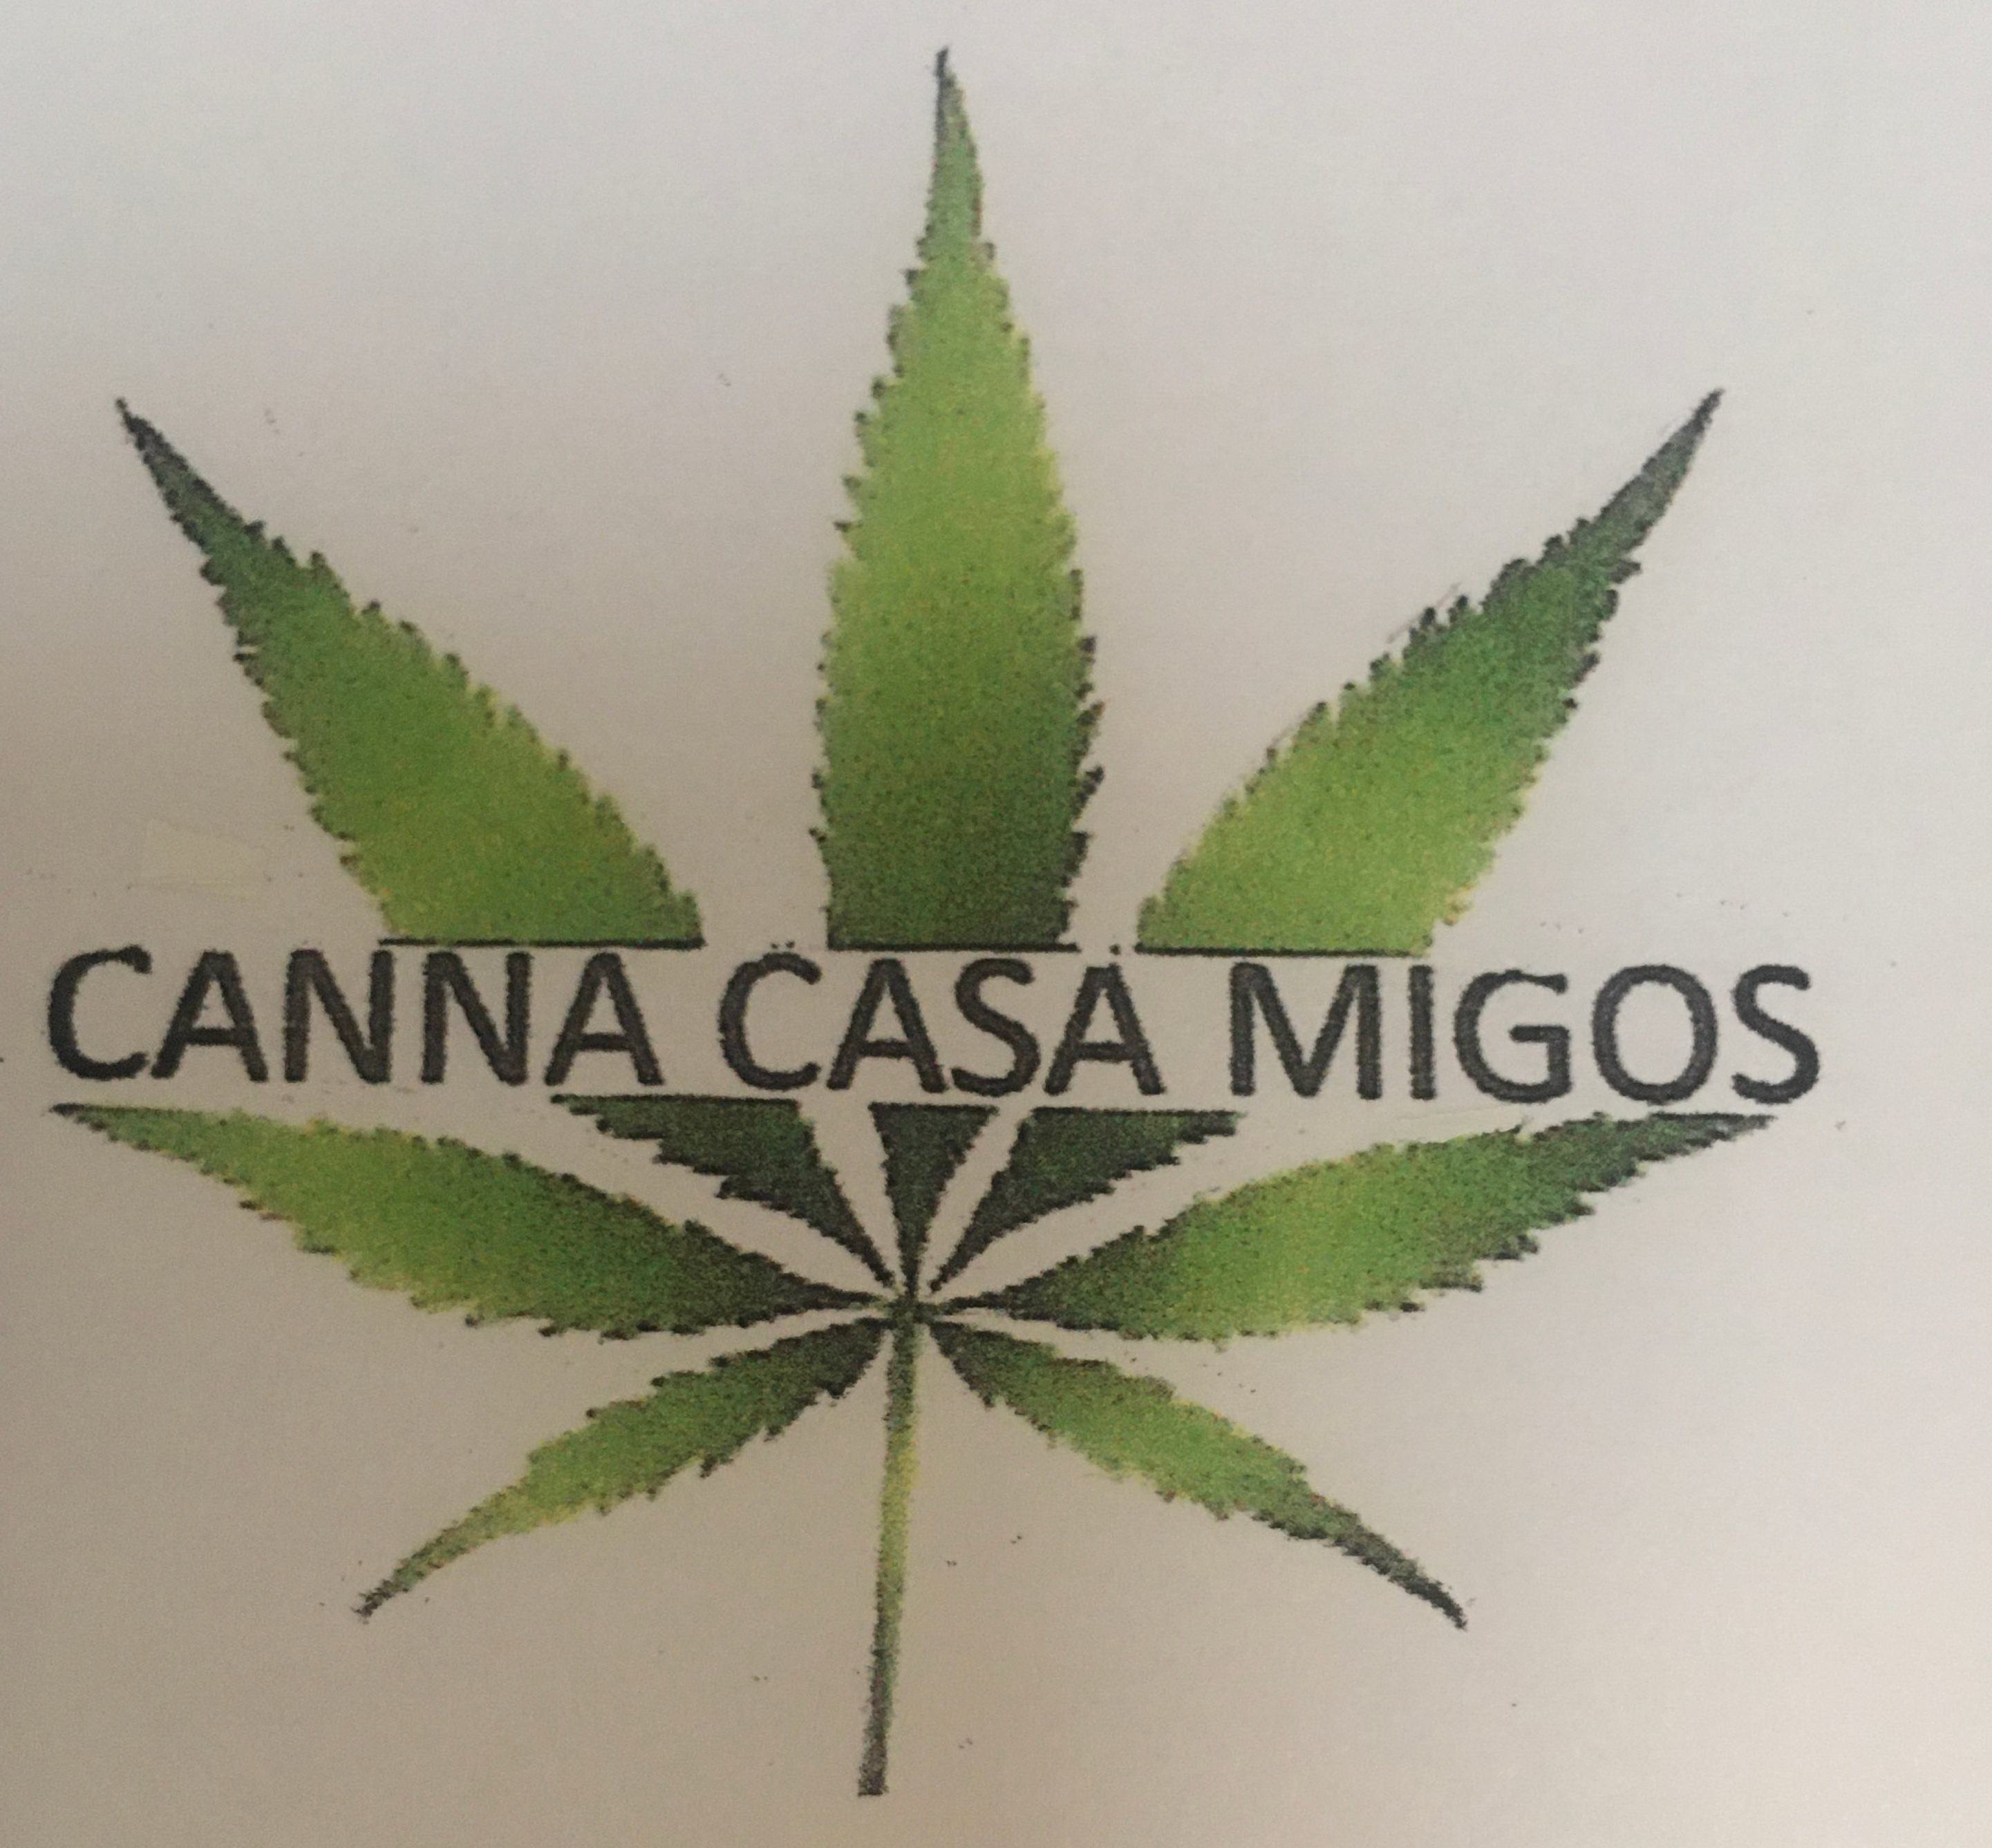  CANNA CASA MIGOS